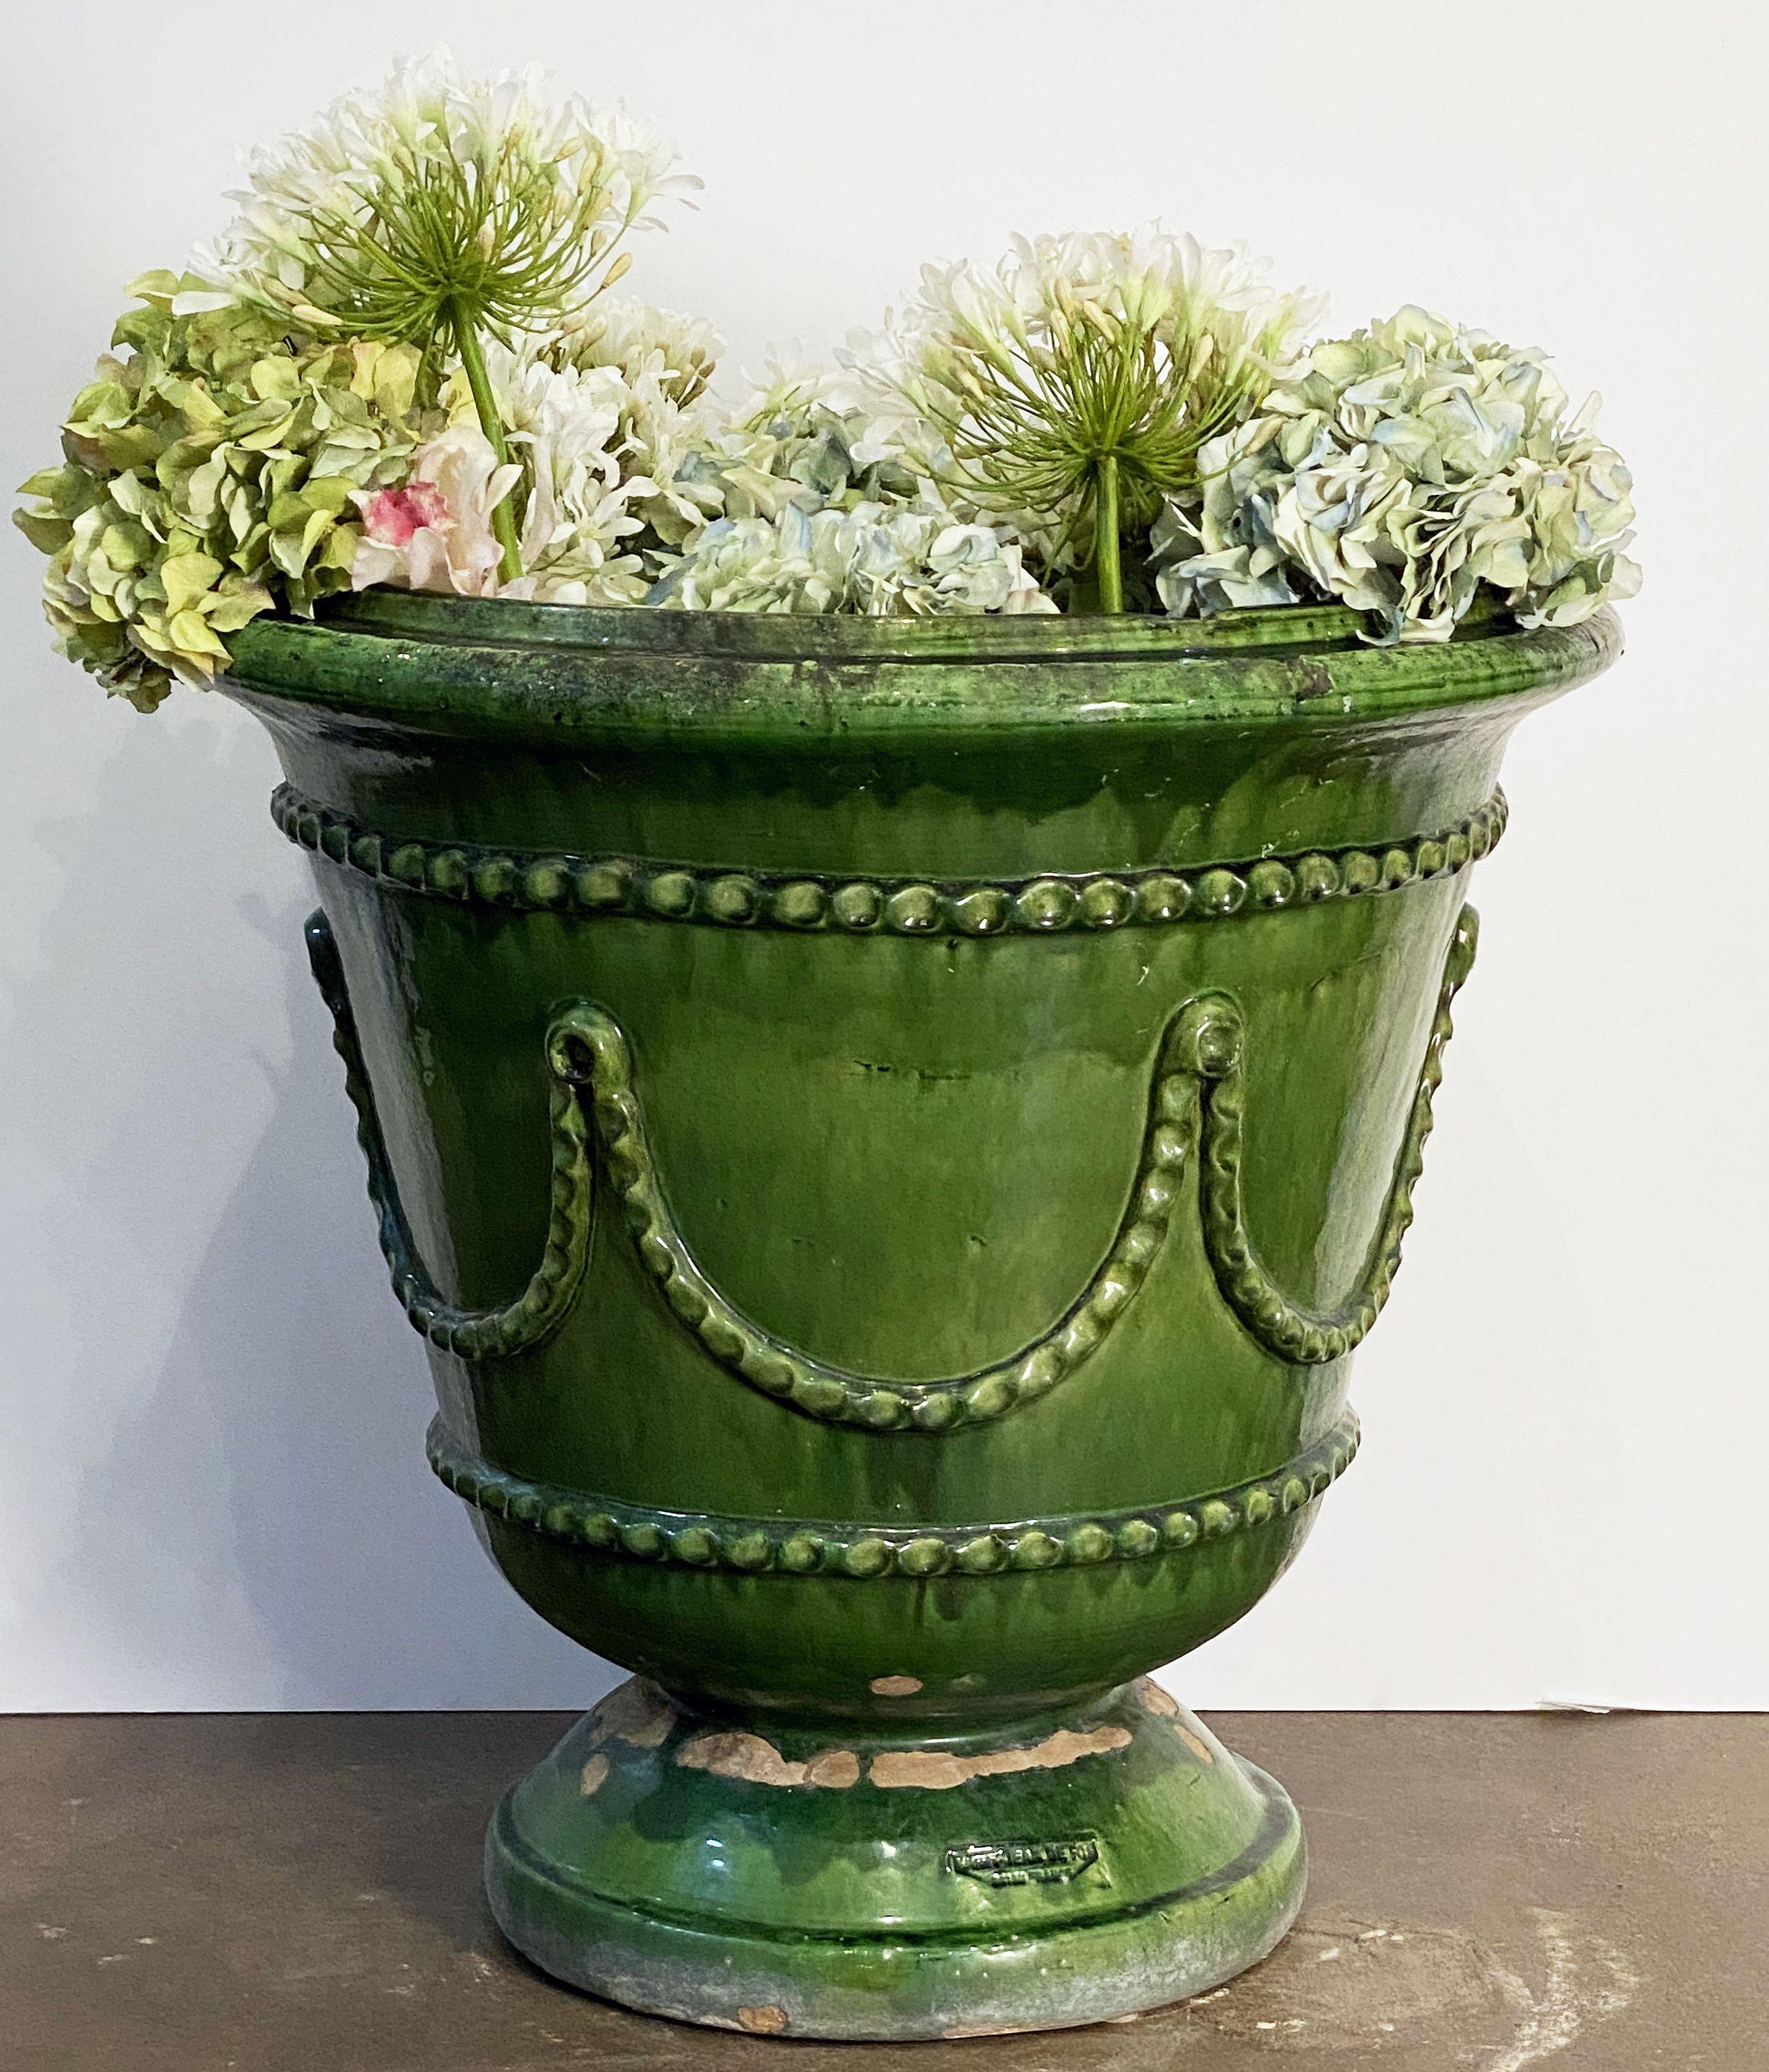 Ein schöner großer französischer Pflanzkübel oder eine Urne mit den leuchtenden Grüntönen der Keramik von Castelnaudary und einem stilvollen Reliefmuster um den gesamten Korpus.

Mit eingeprägten Töpferzeichen auf der Innenseite und am Boden -